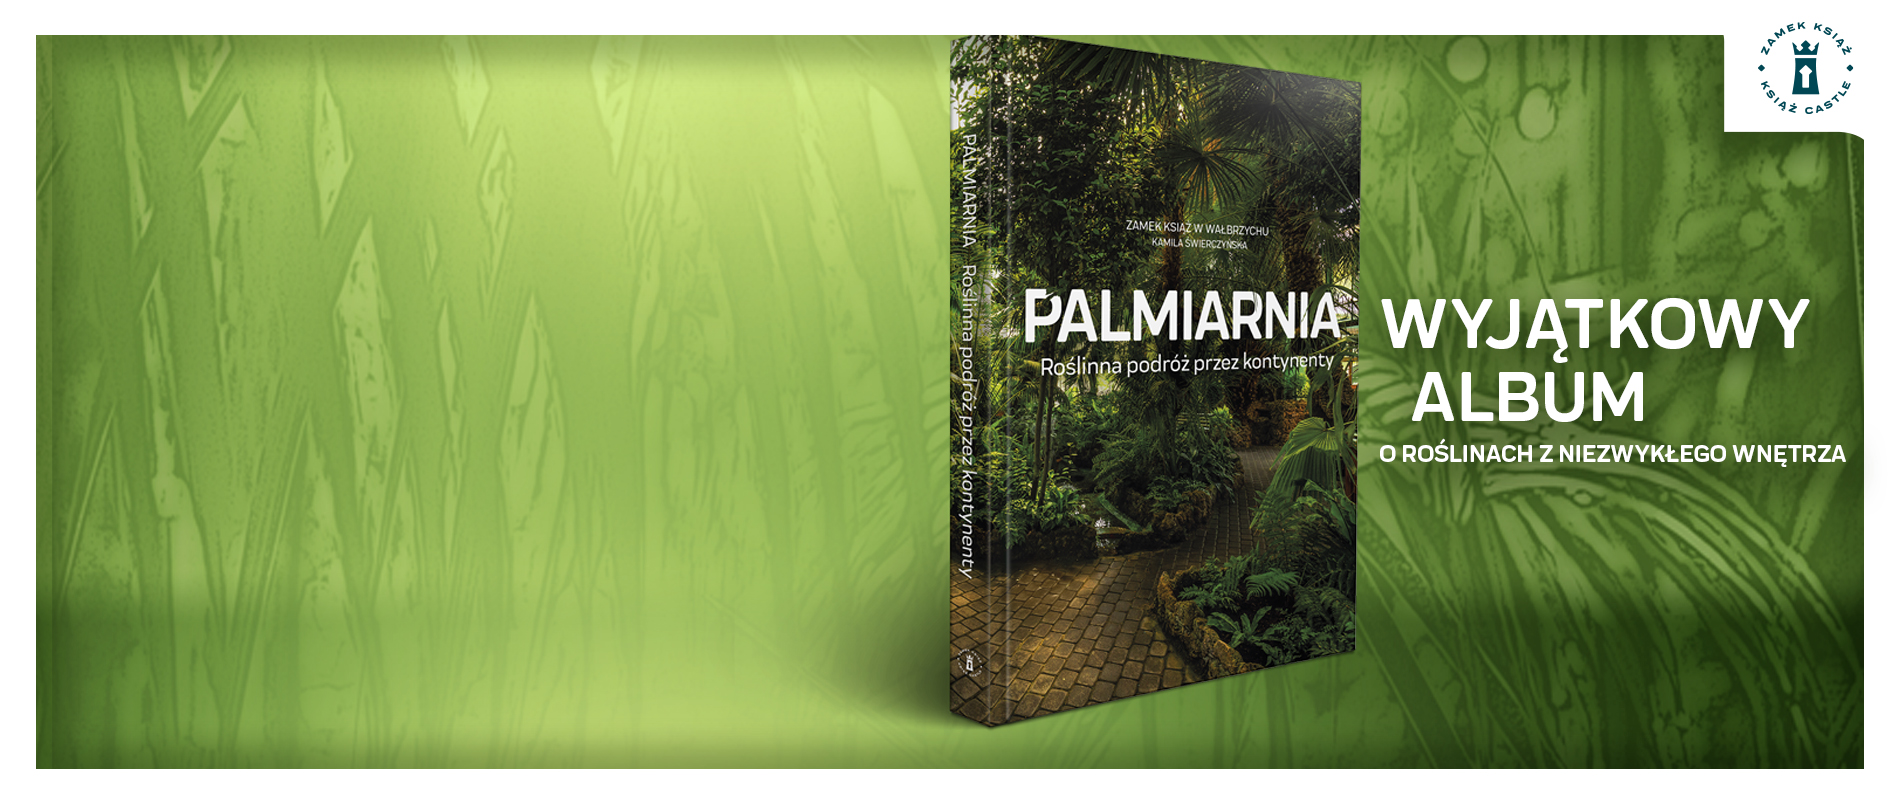 Album Palmiarnia. Roślinna podróż przez kontynenty